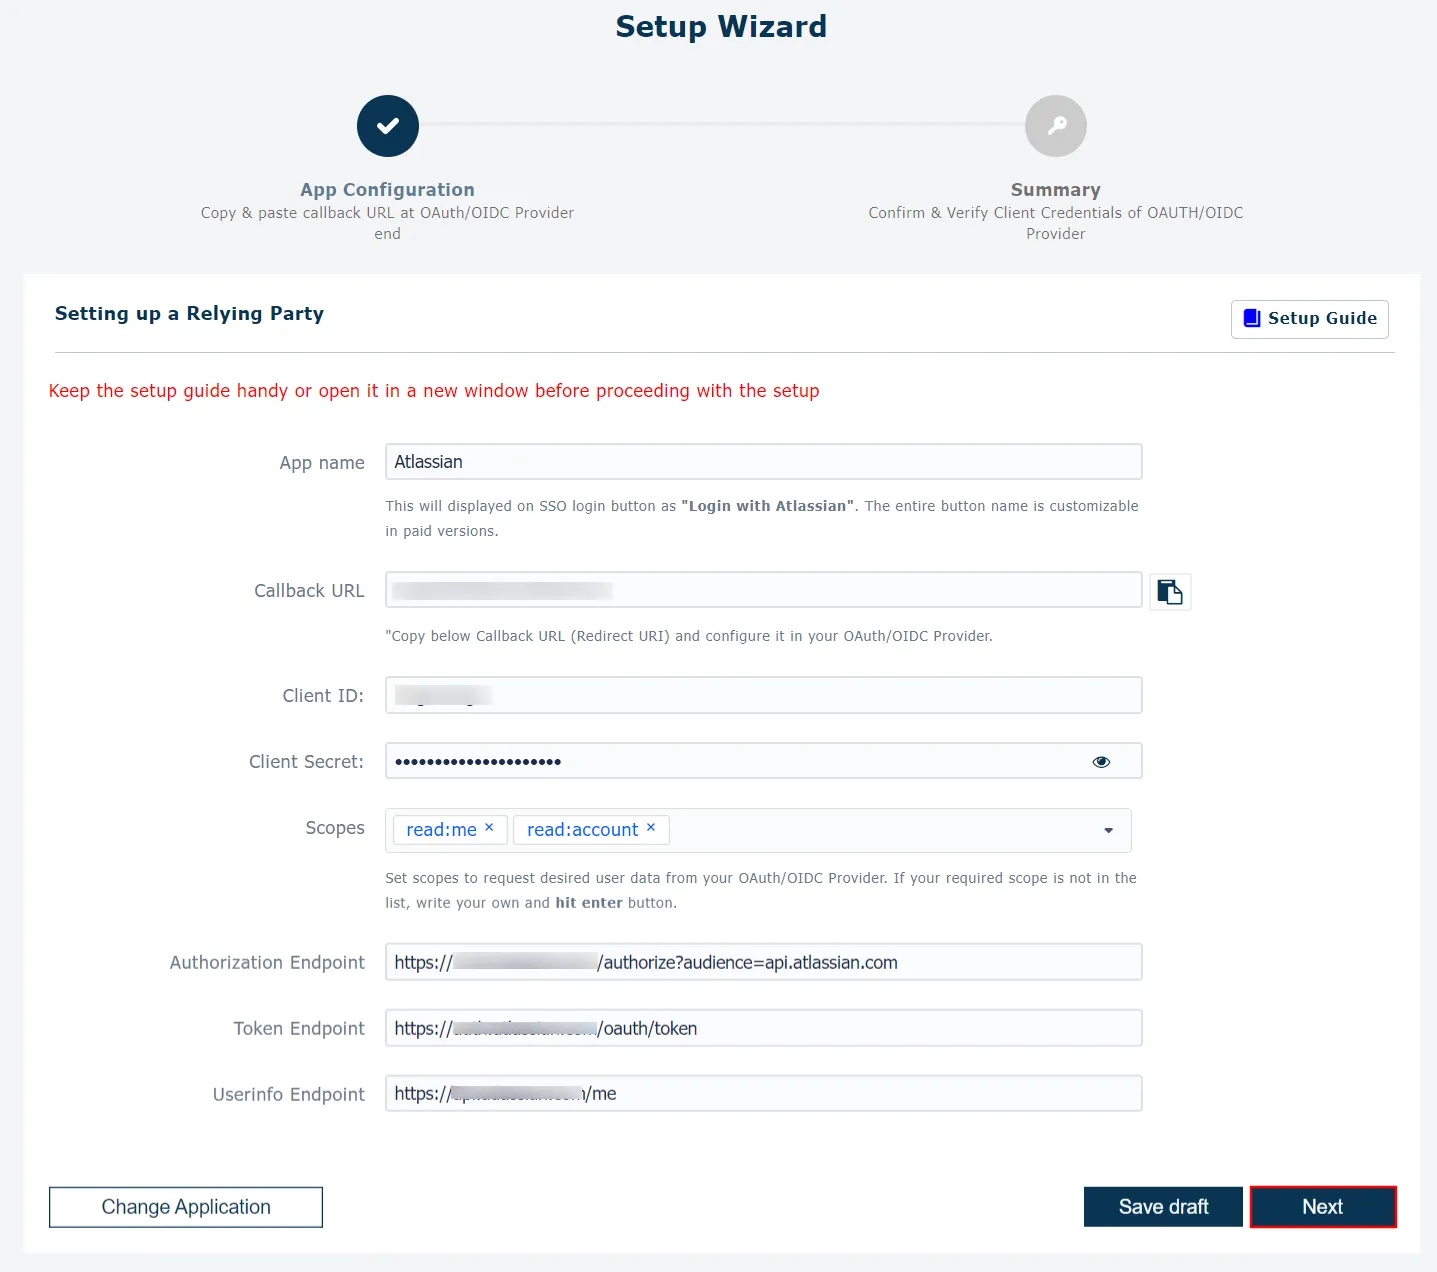 Inicio de sesión único (SSO) de Atlassian: ID de cliente y secreto de cliente